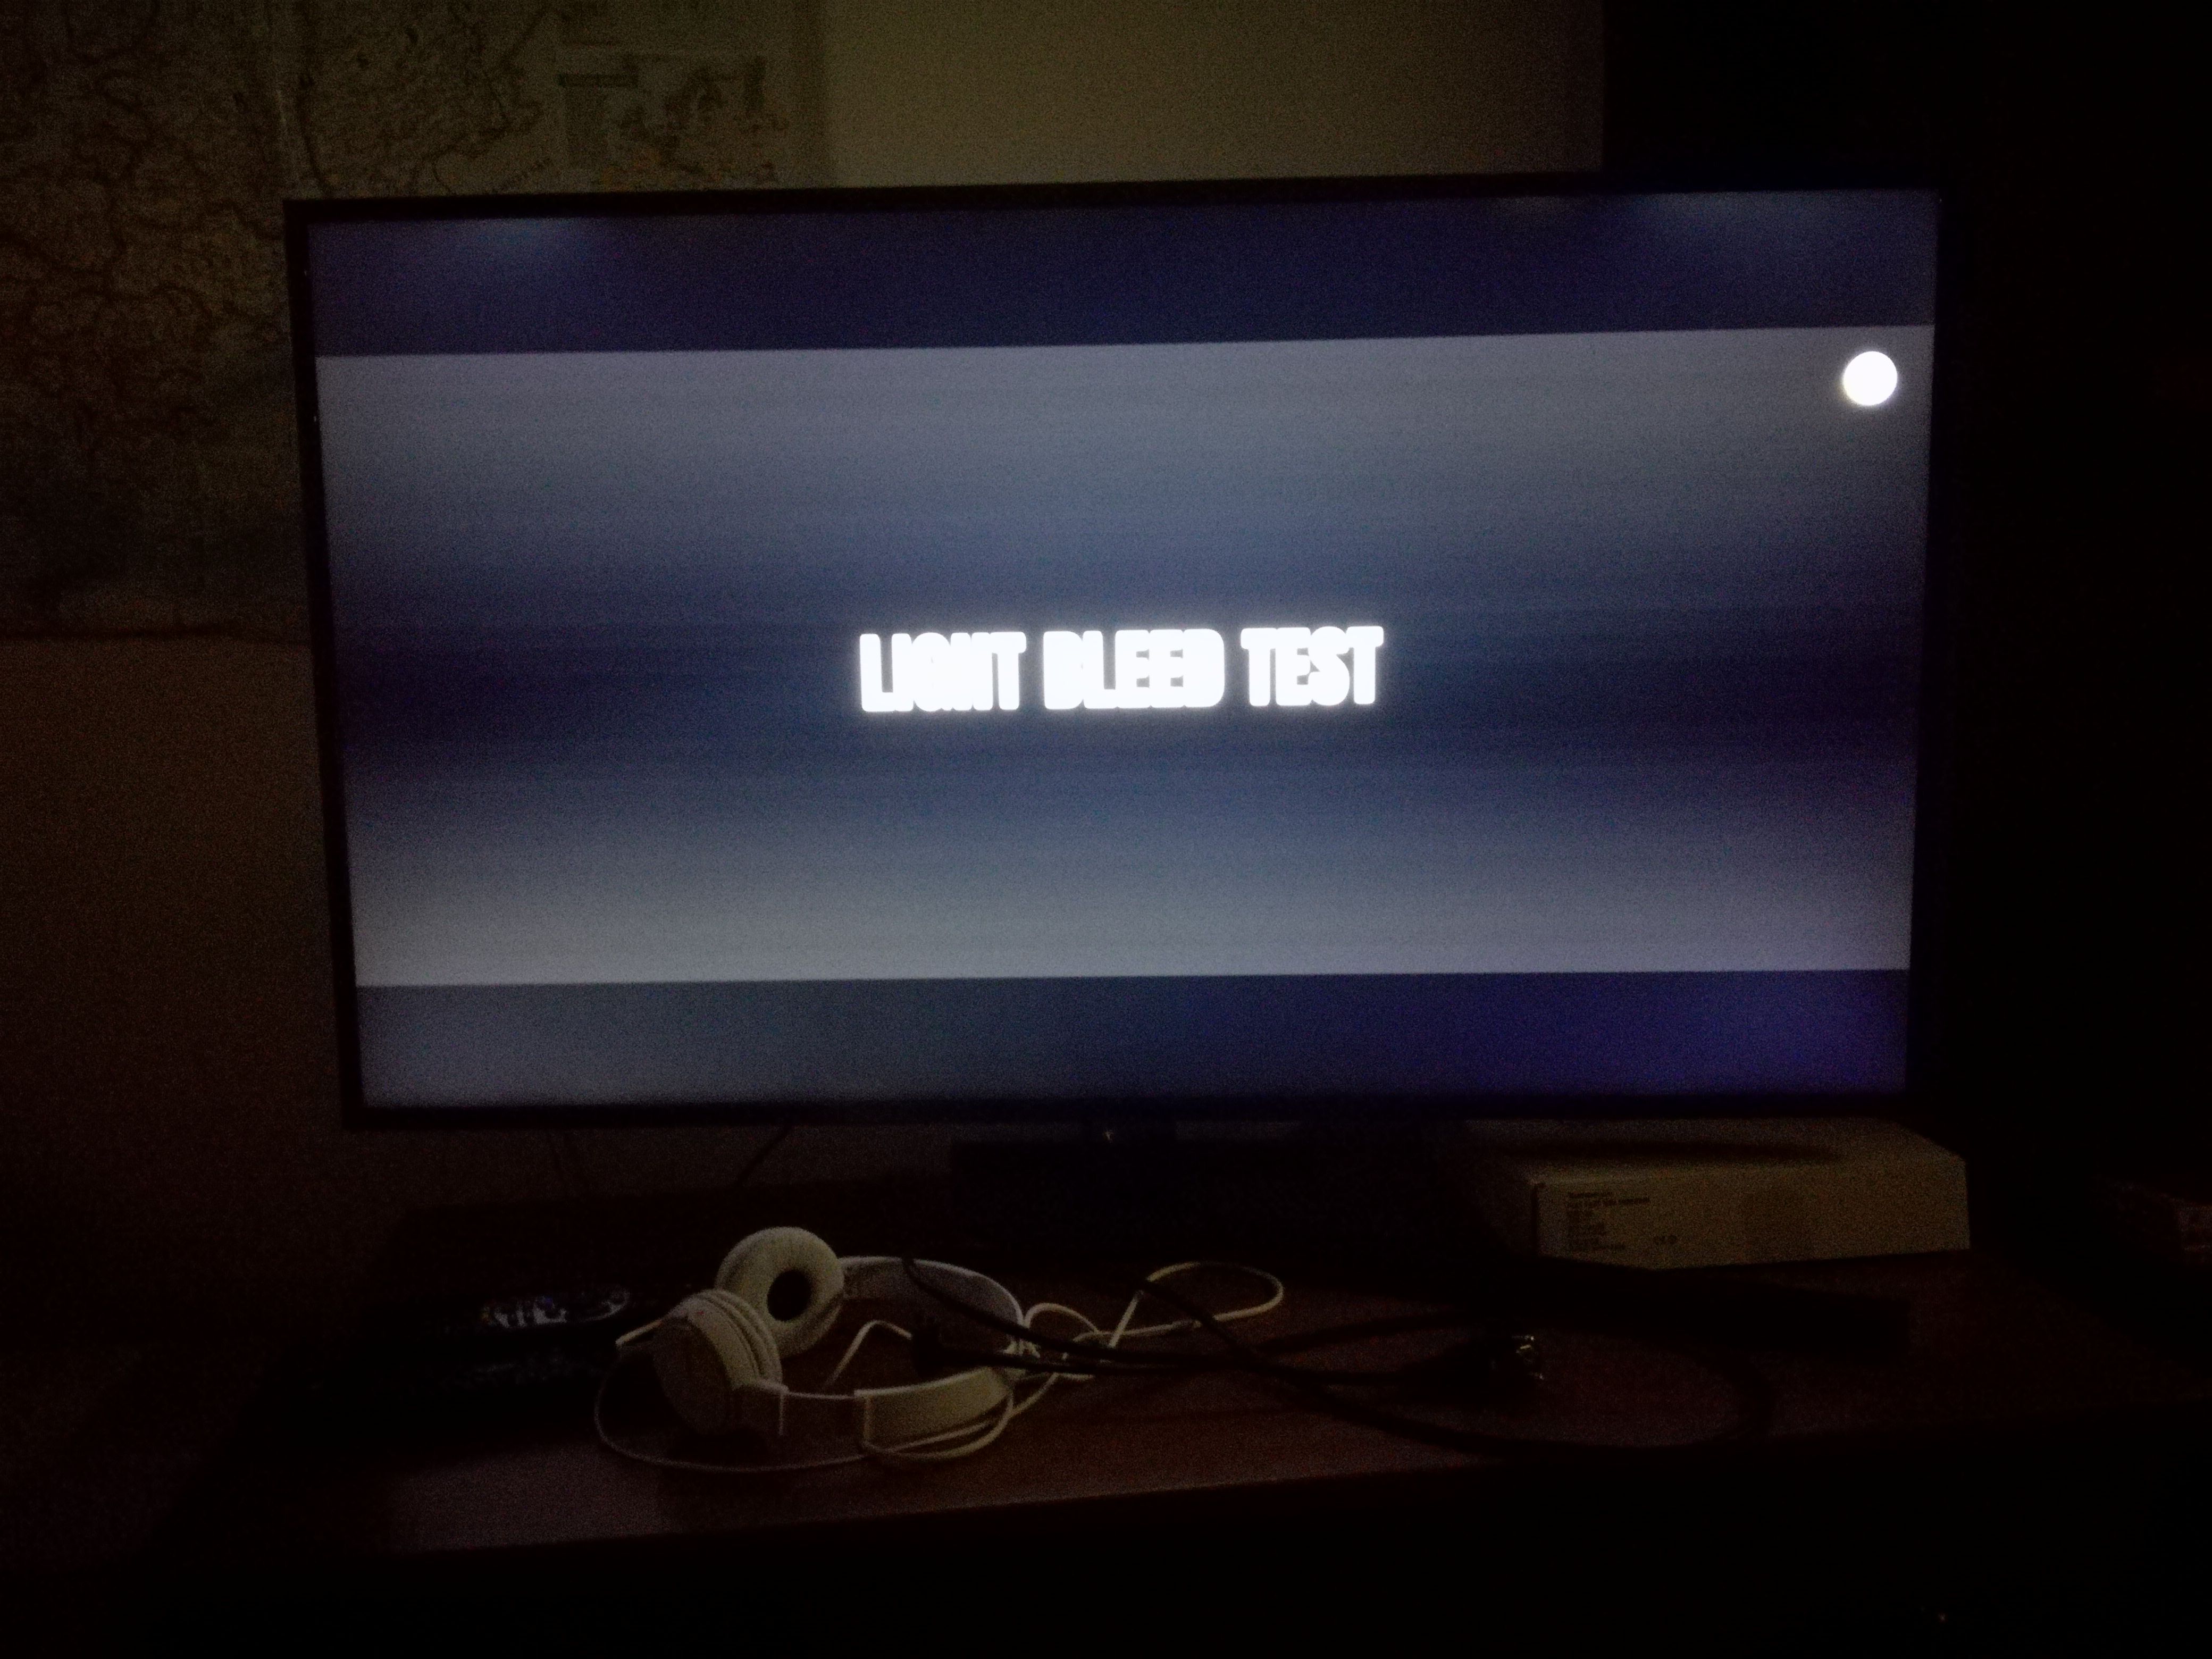 Problema na Imagem de TV NOVA Samsung Fugas de Luz (Backlight Bleed) ? -  Samsung Community